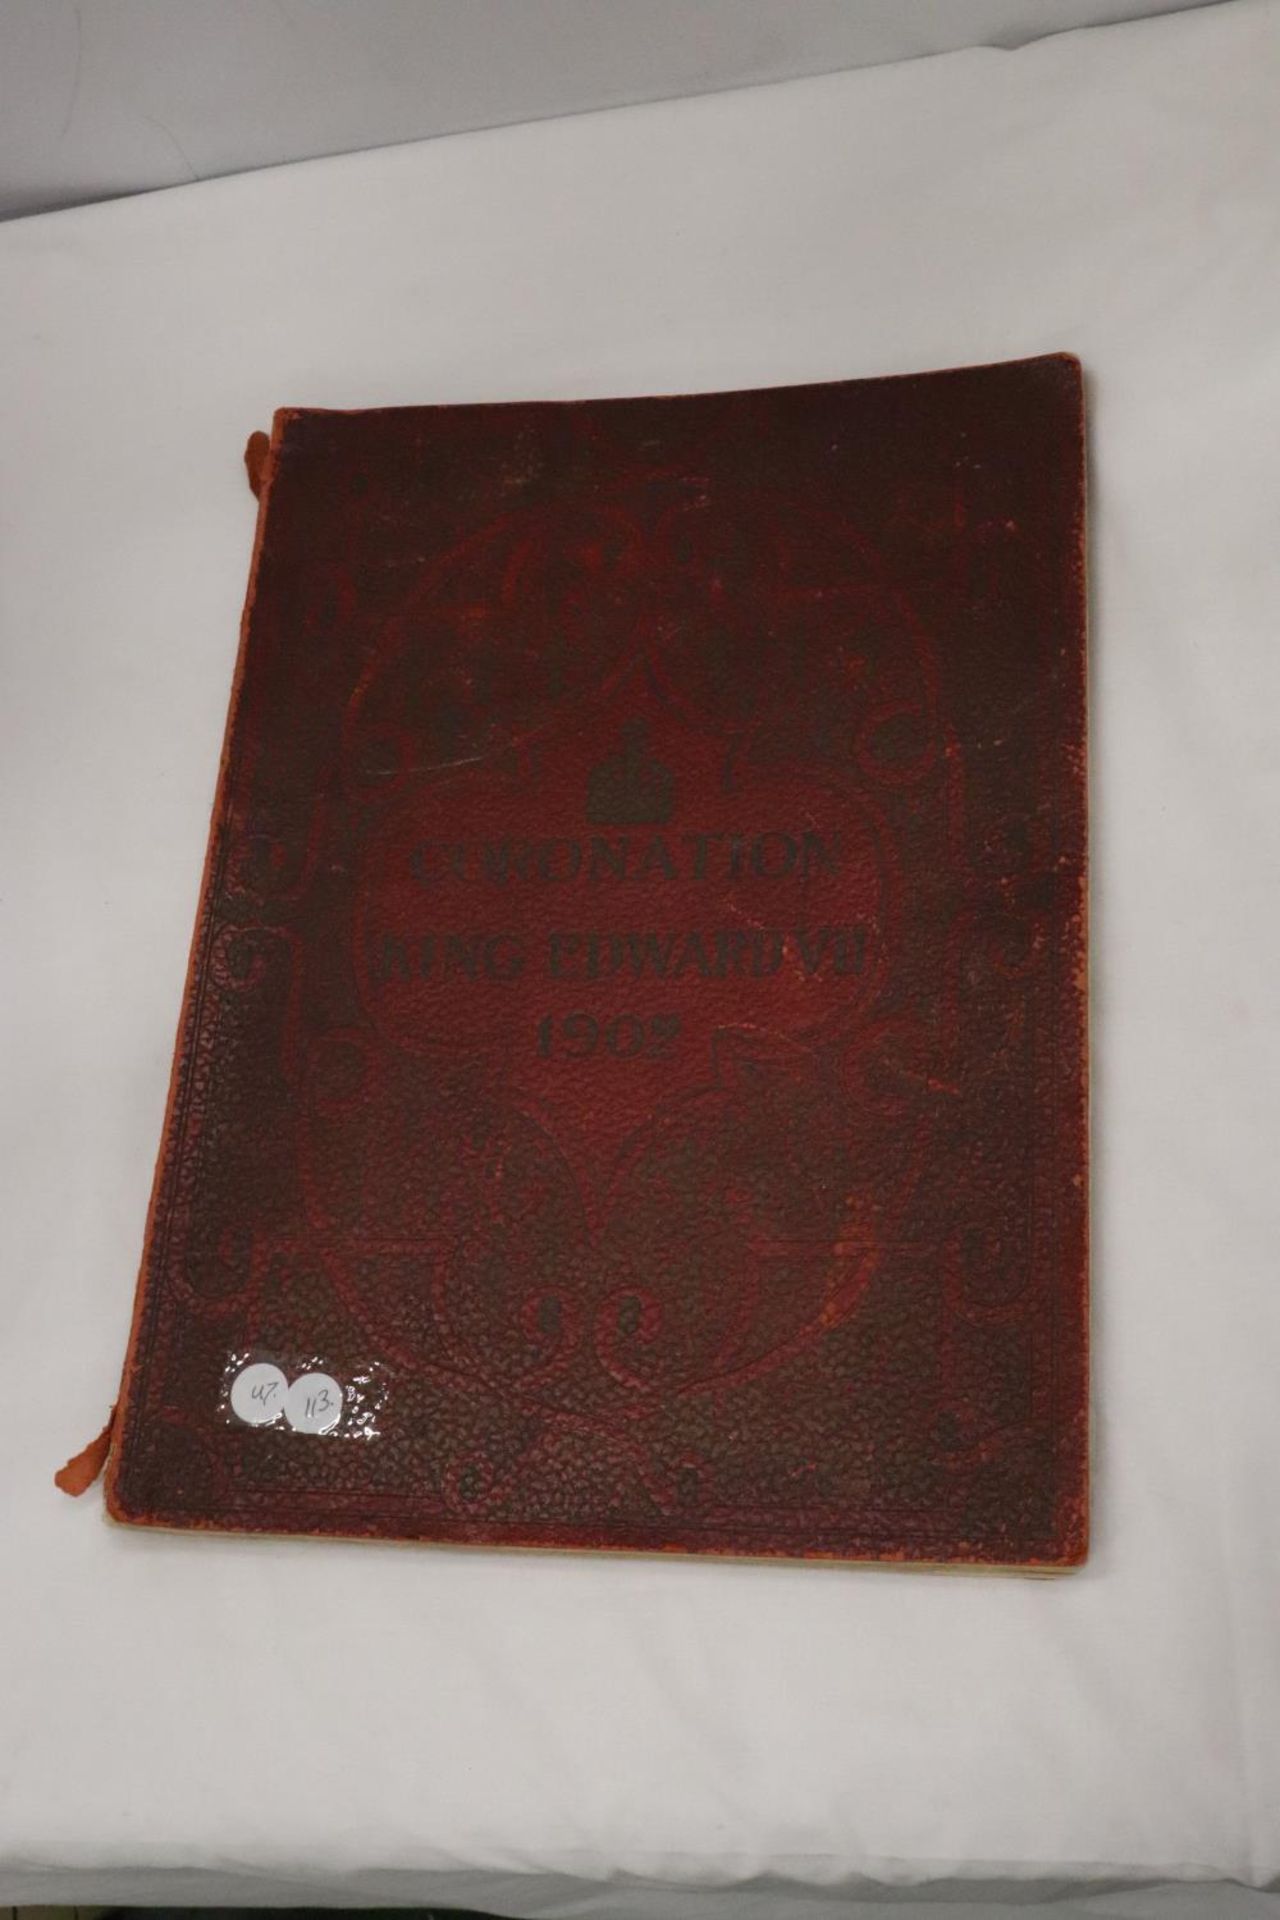 TWO KING EDWARD V11, 1902, CORONATION BOOKS